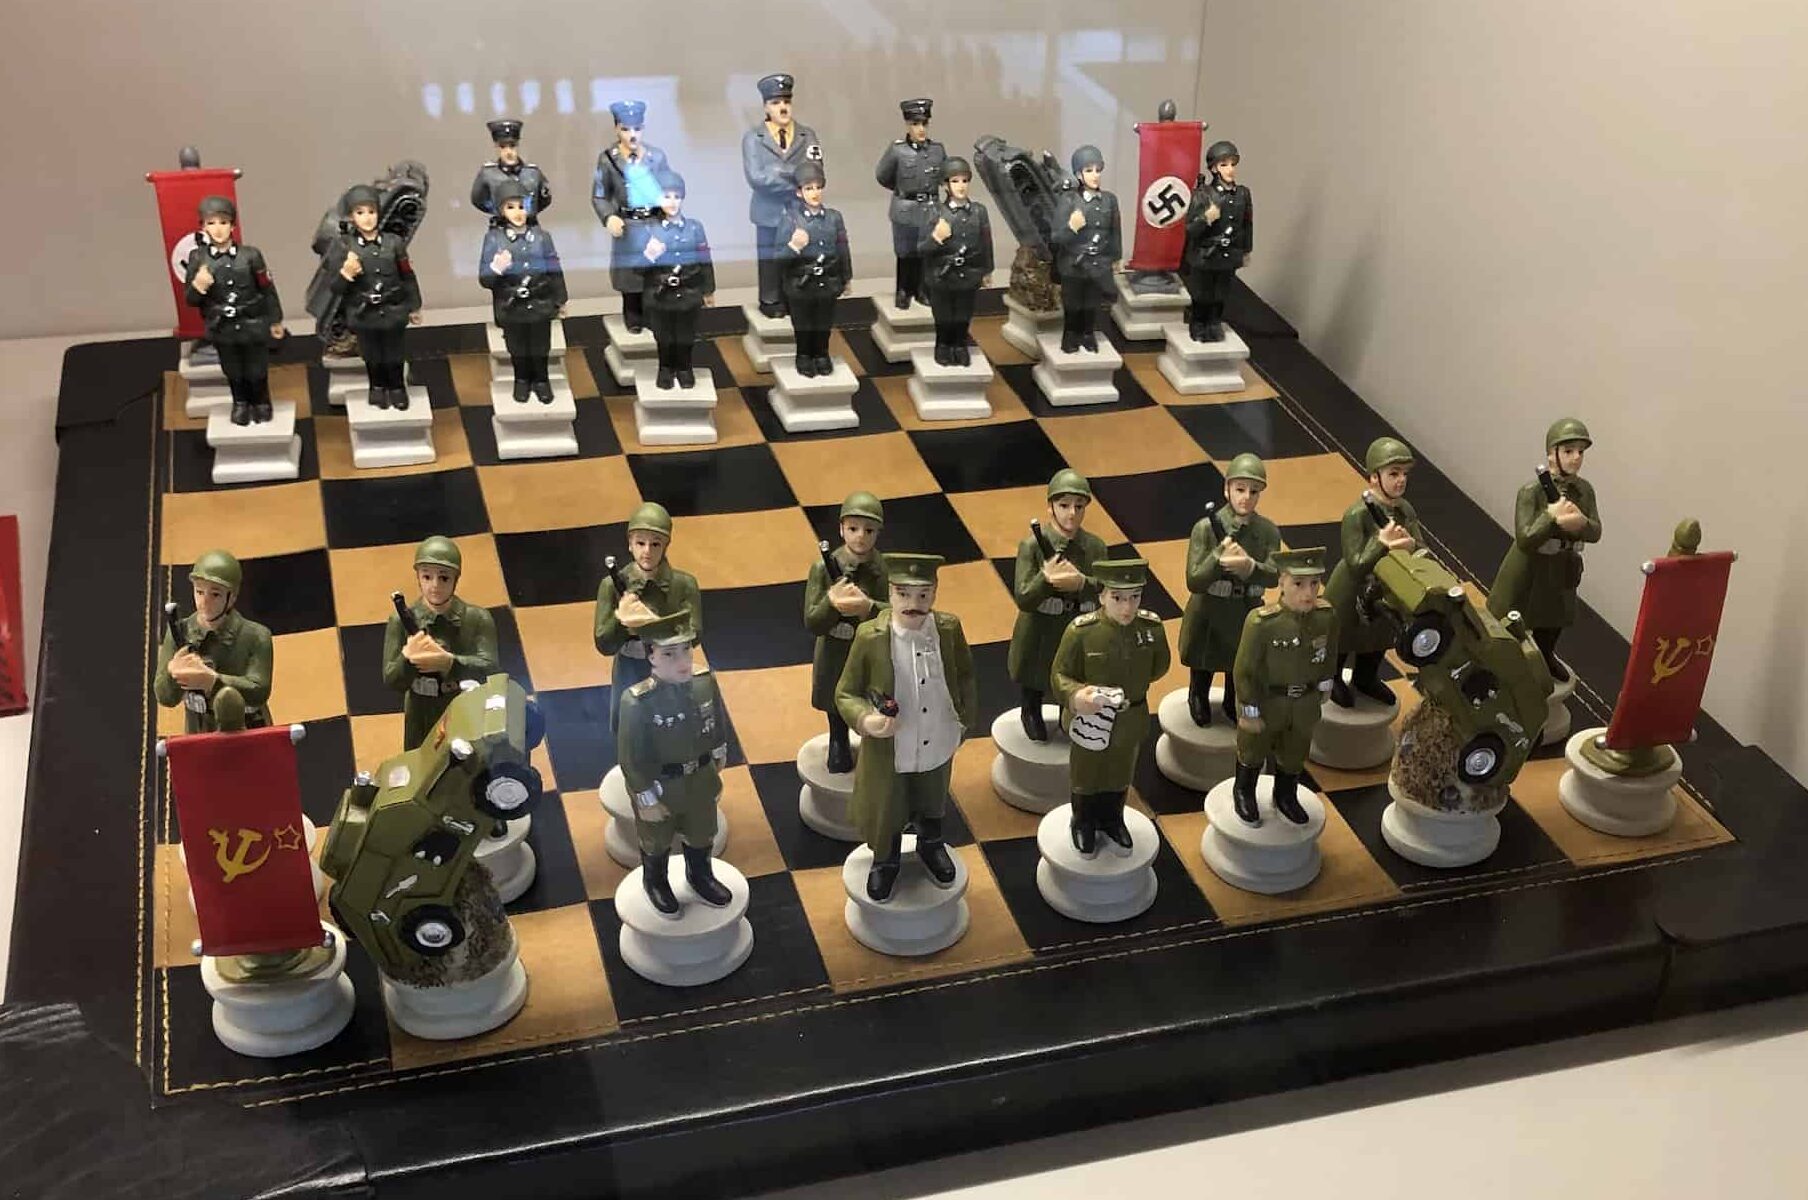 Soviets vs Nazis chess set (Germany) at the Gökyay Foundation Chess Museum in Ankara, Turkey